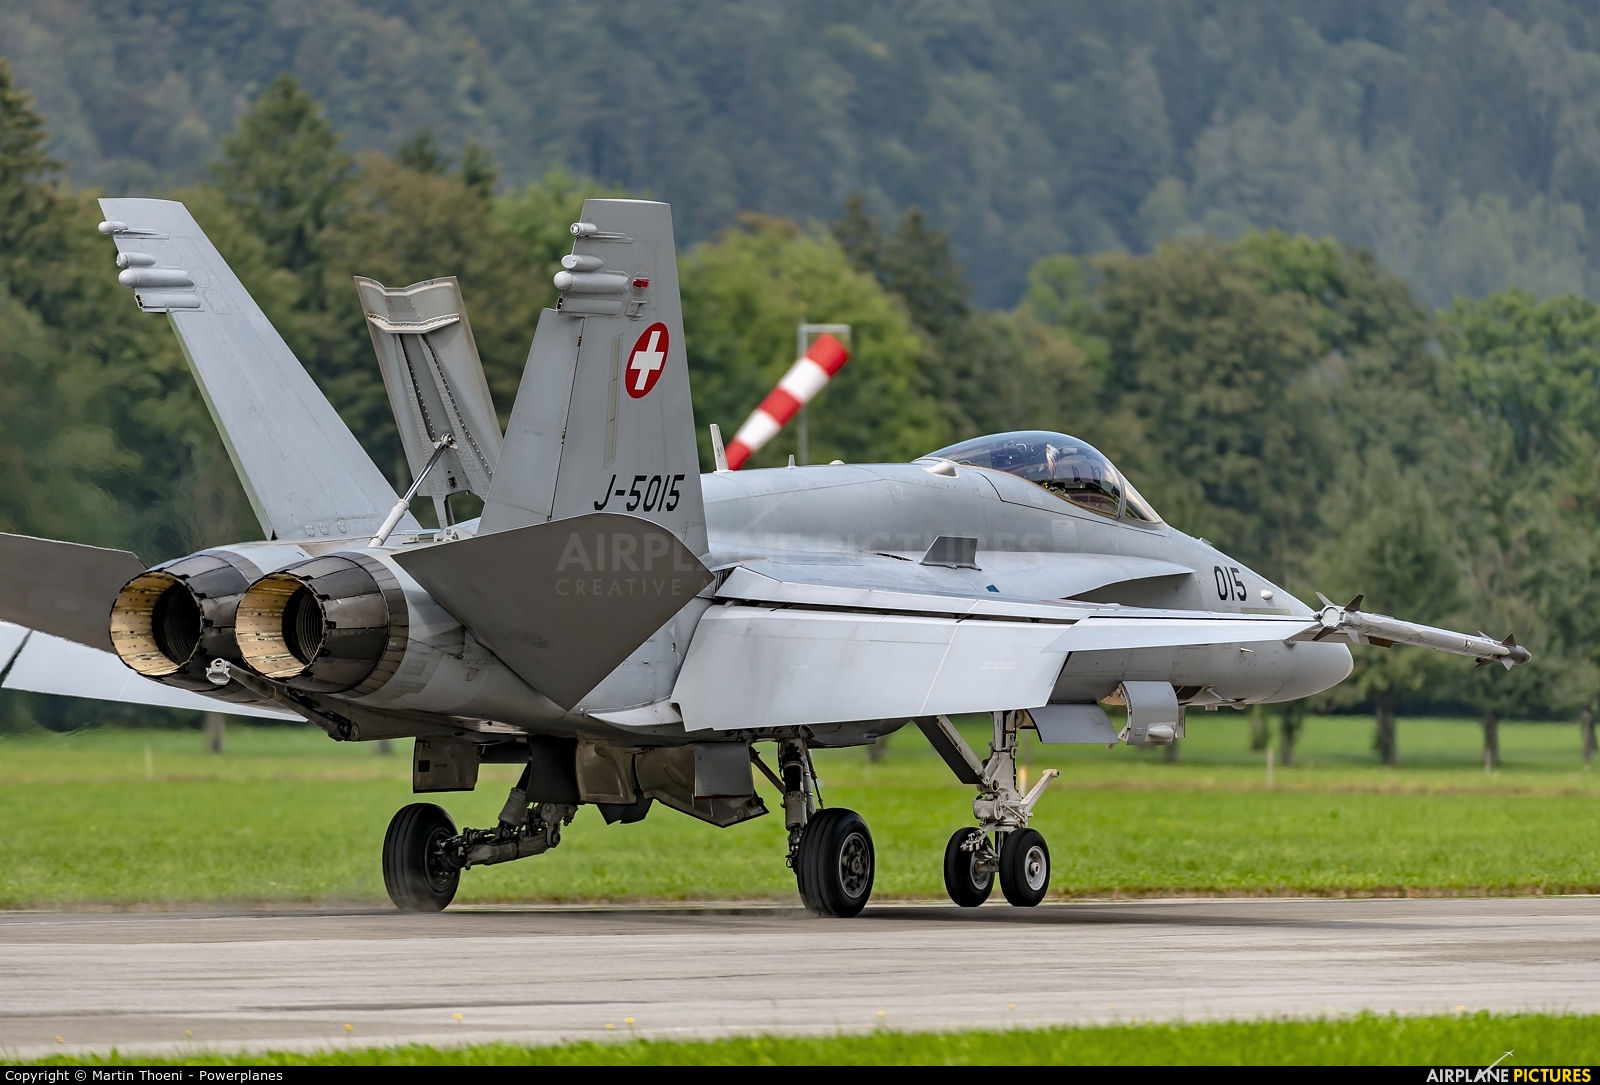 Switzerland - Air Force J-5015 aircraft at Mollis